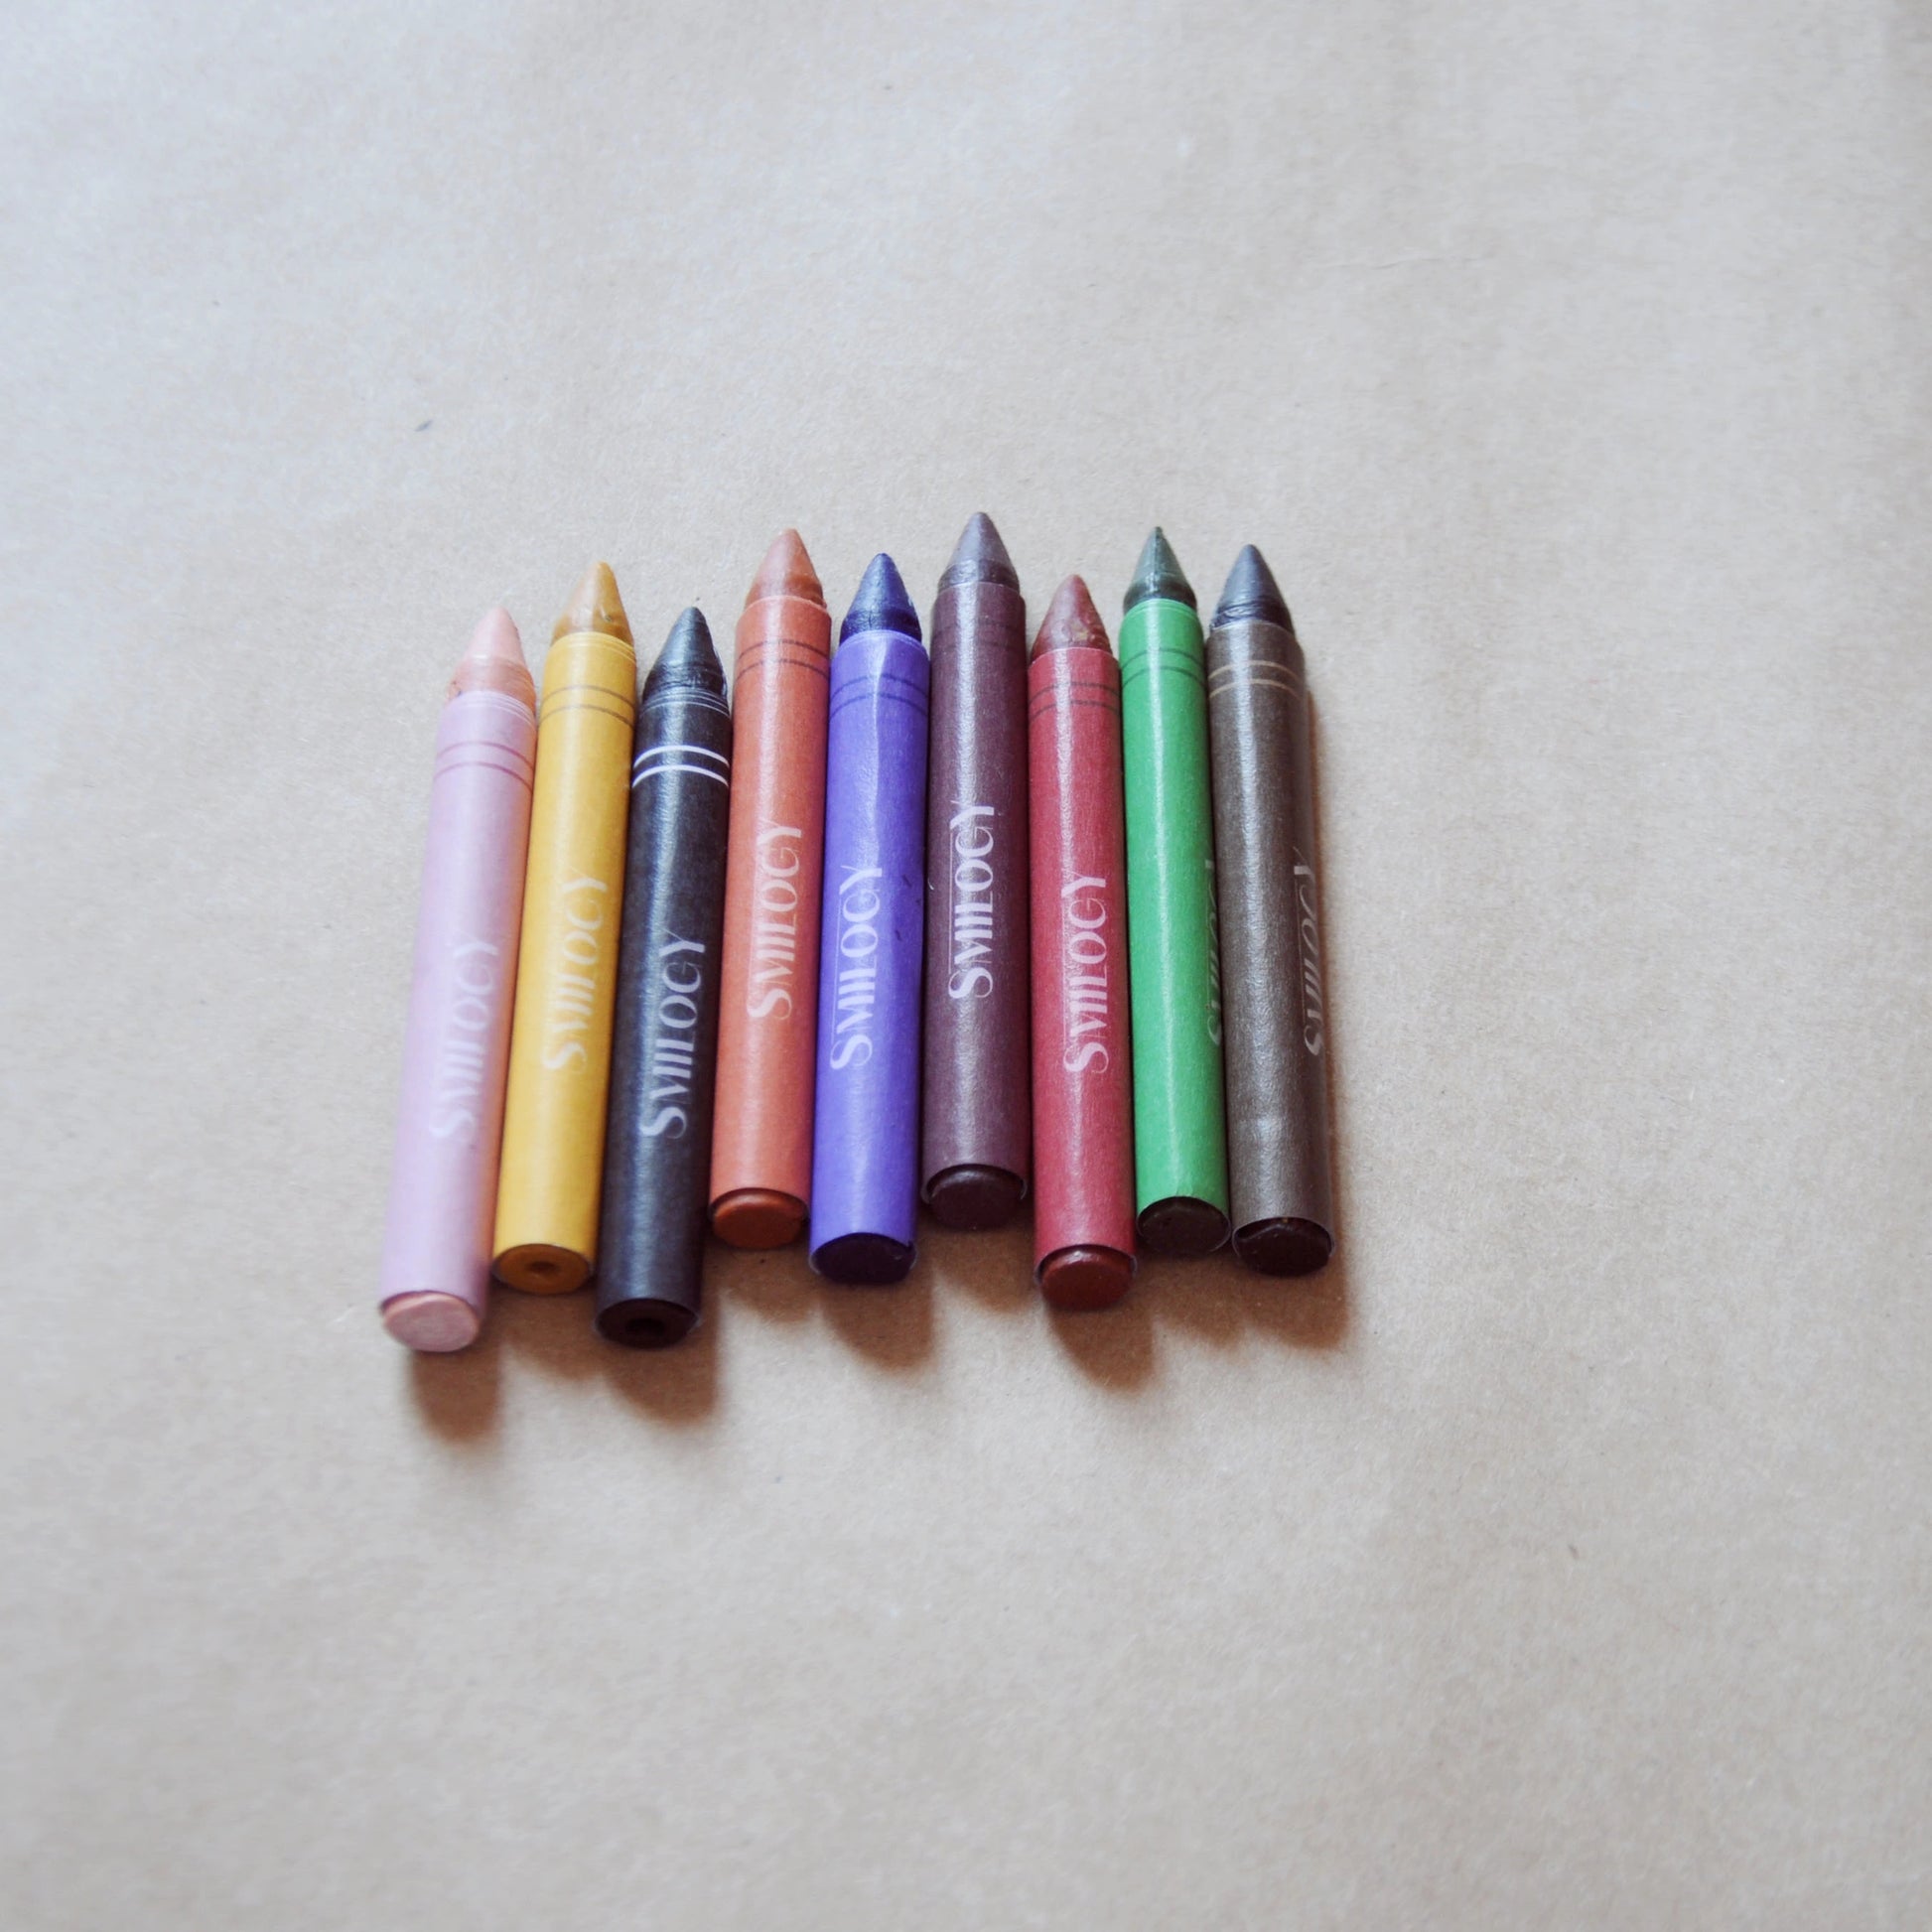 10-Piece Textured Organic Beeswax Ocean Rock Crayons – Smilogy Organic  Beeswax Crayons